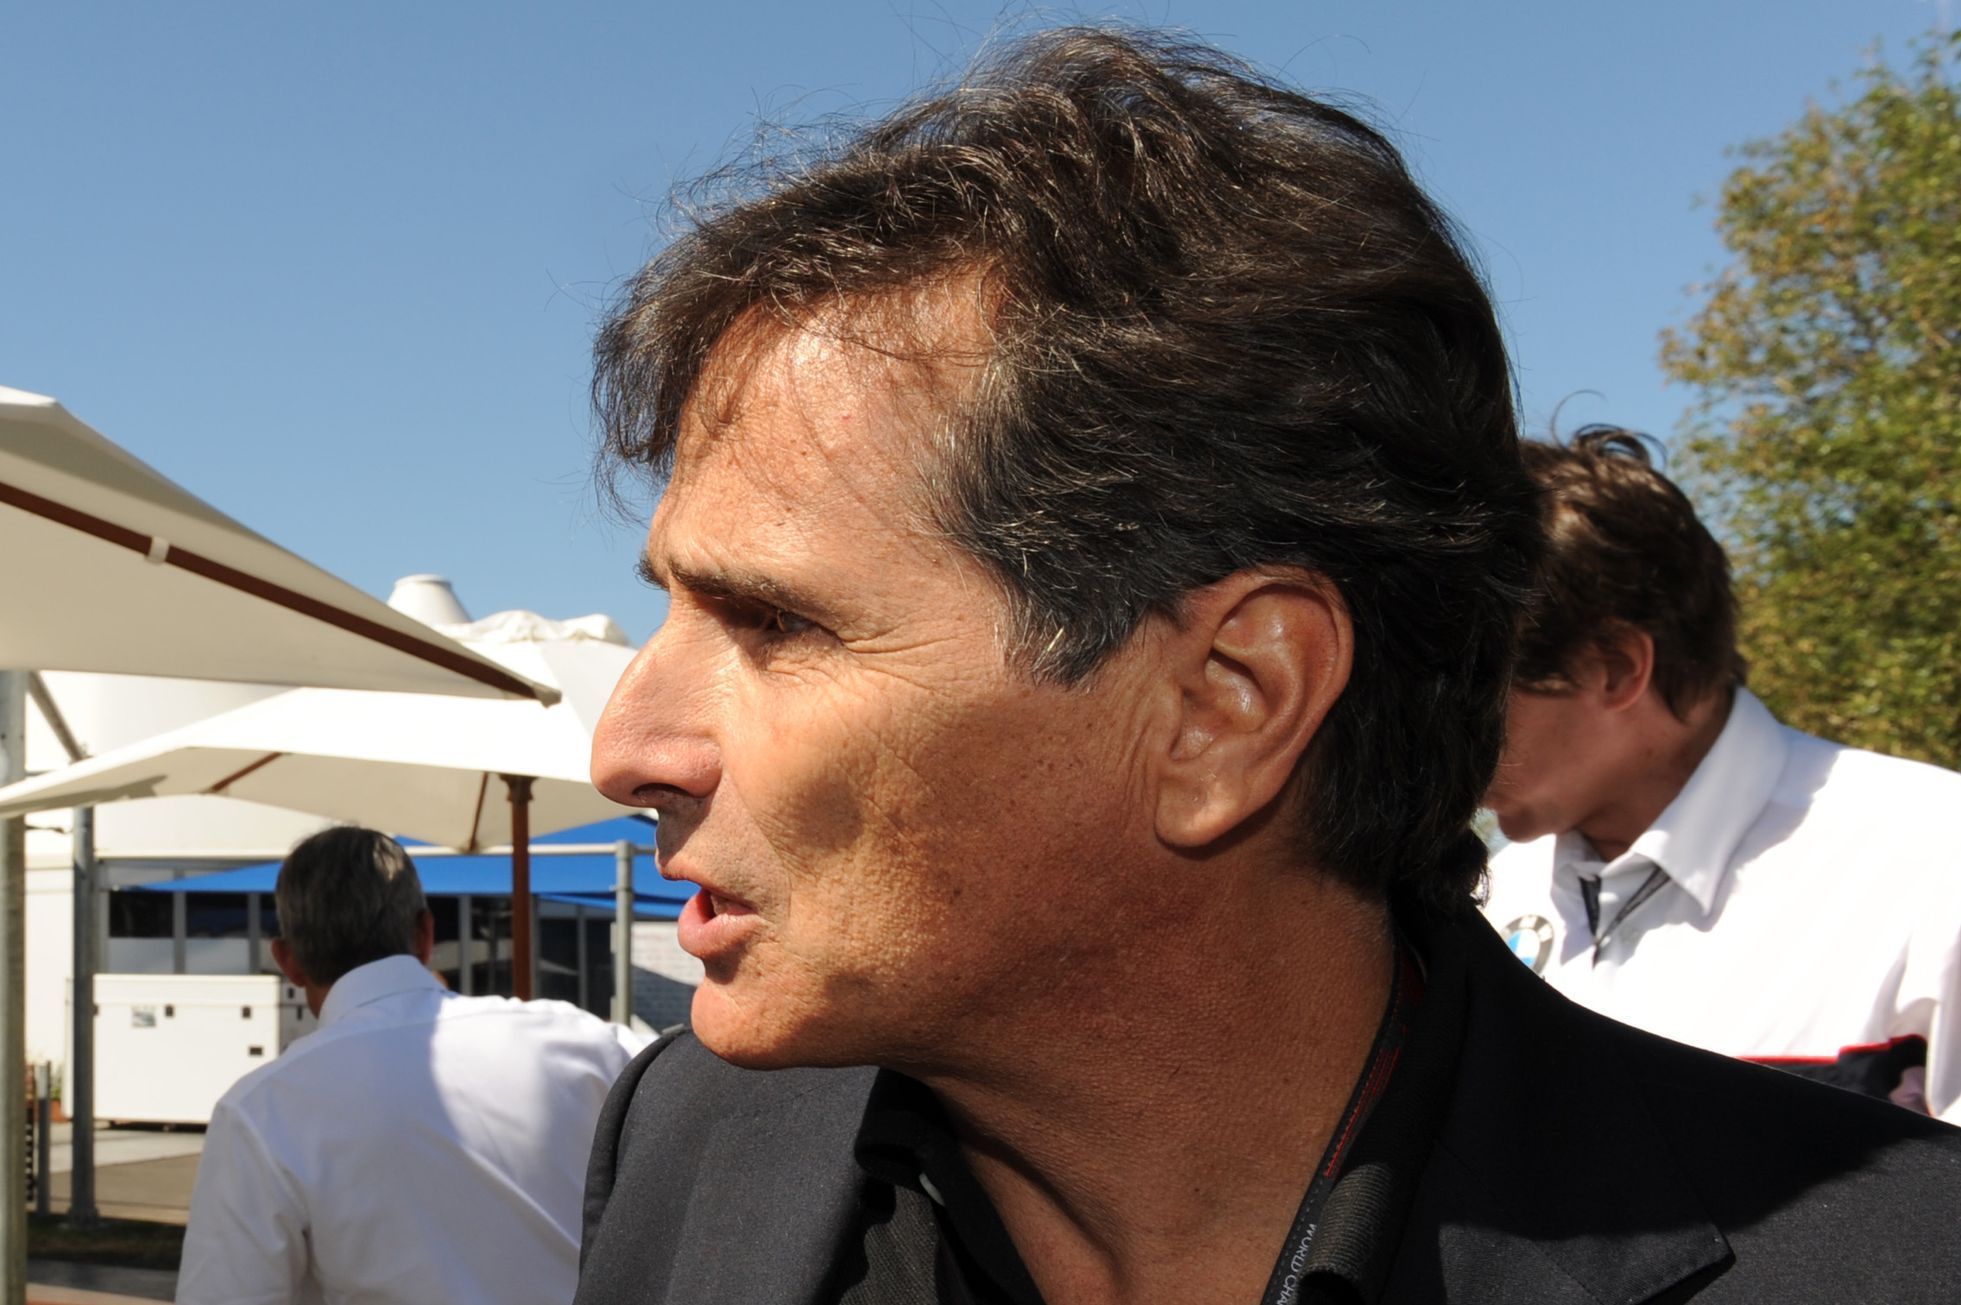 Nelson Piquet (2009)